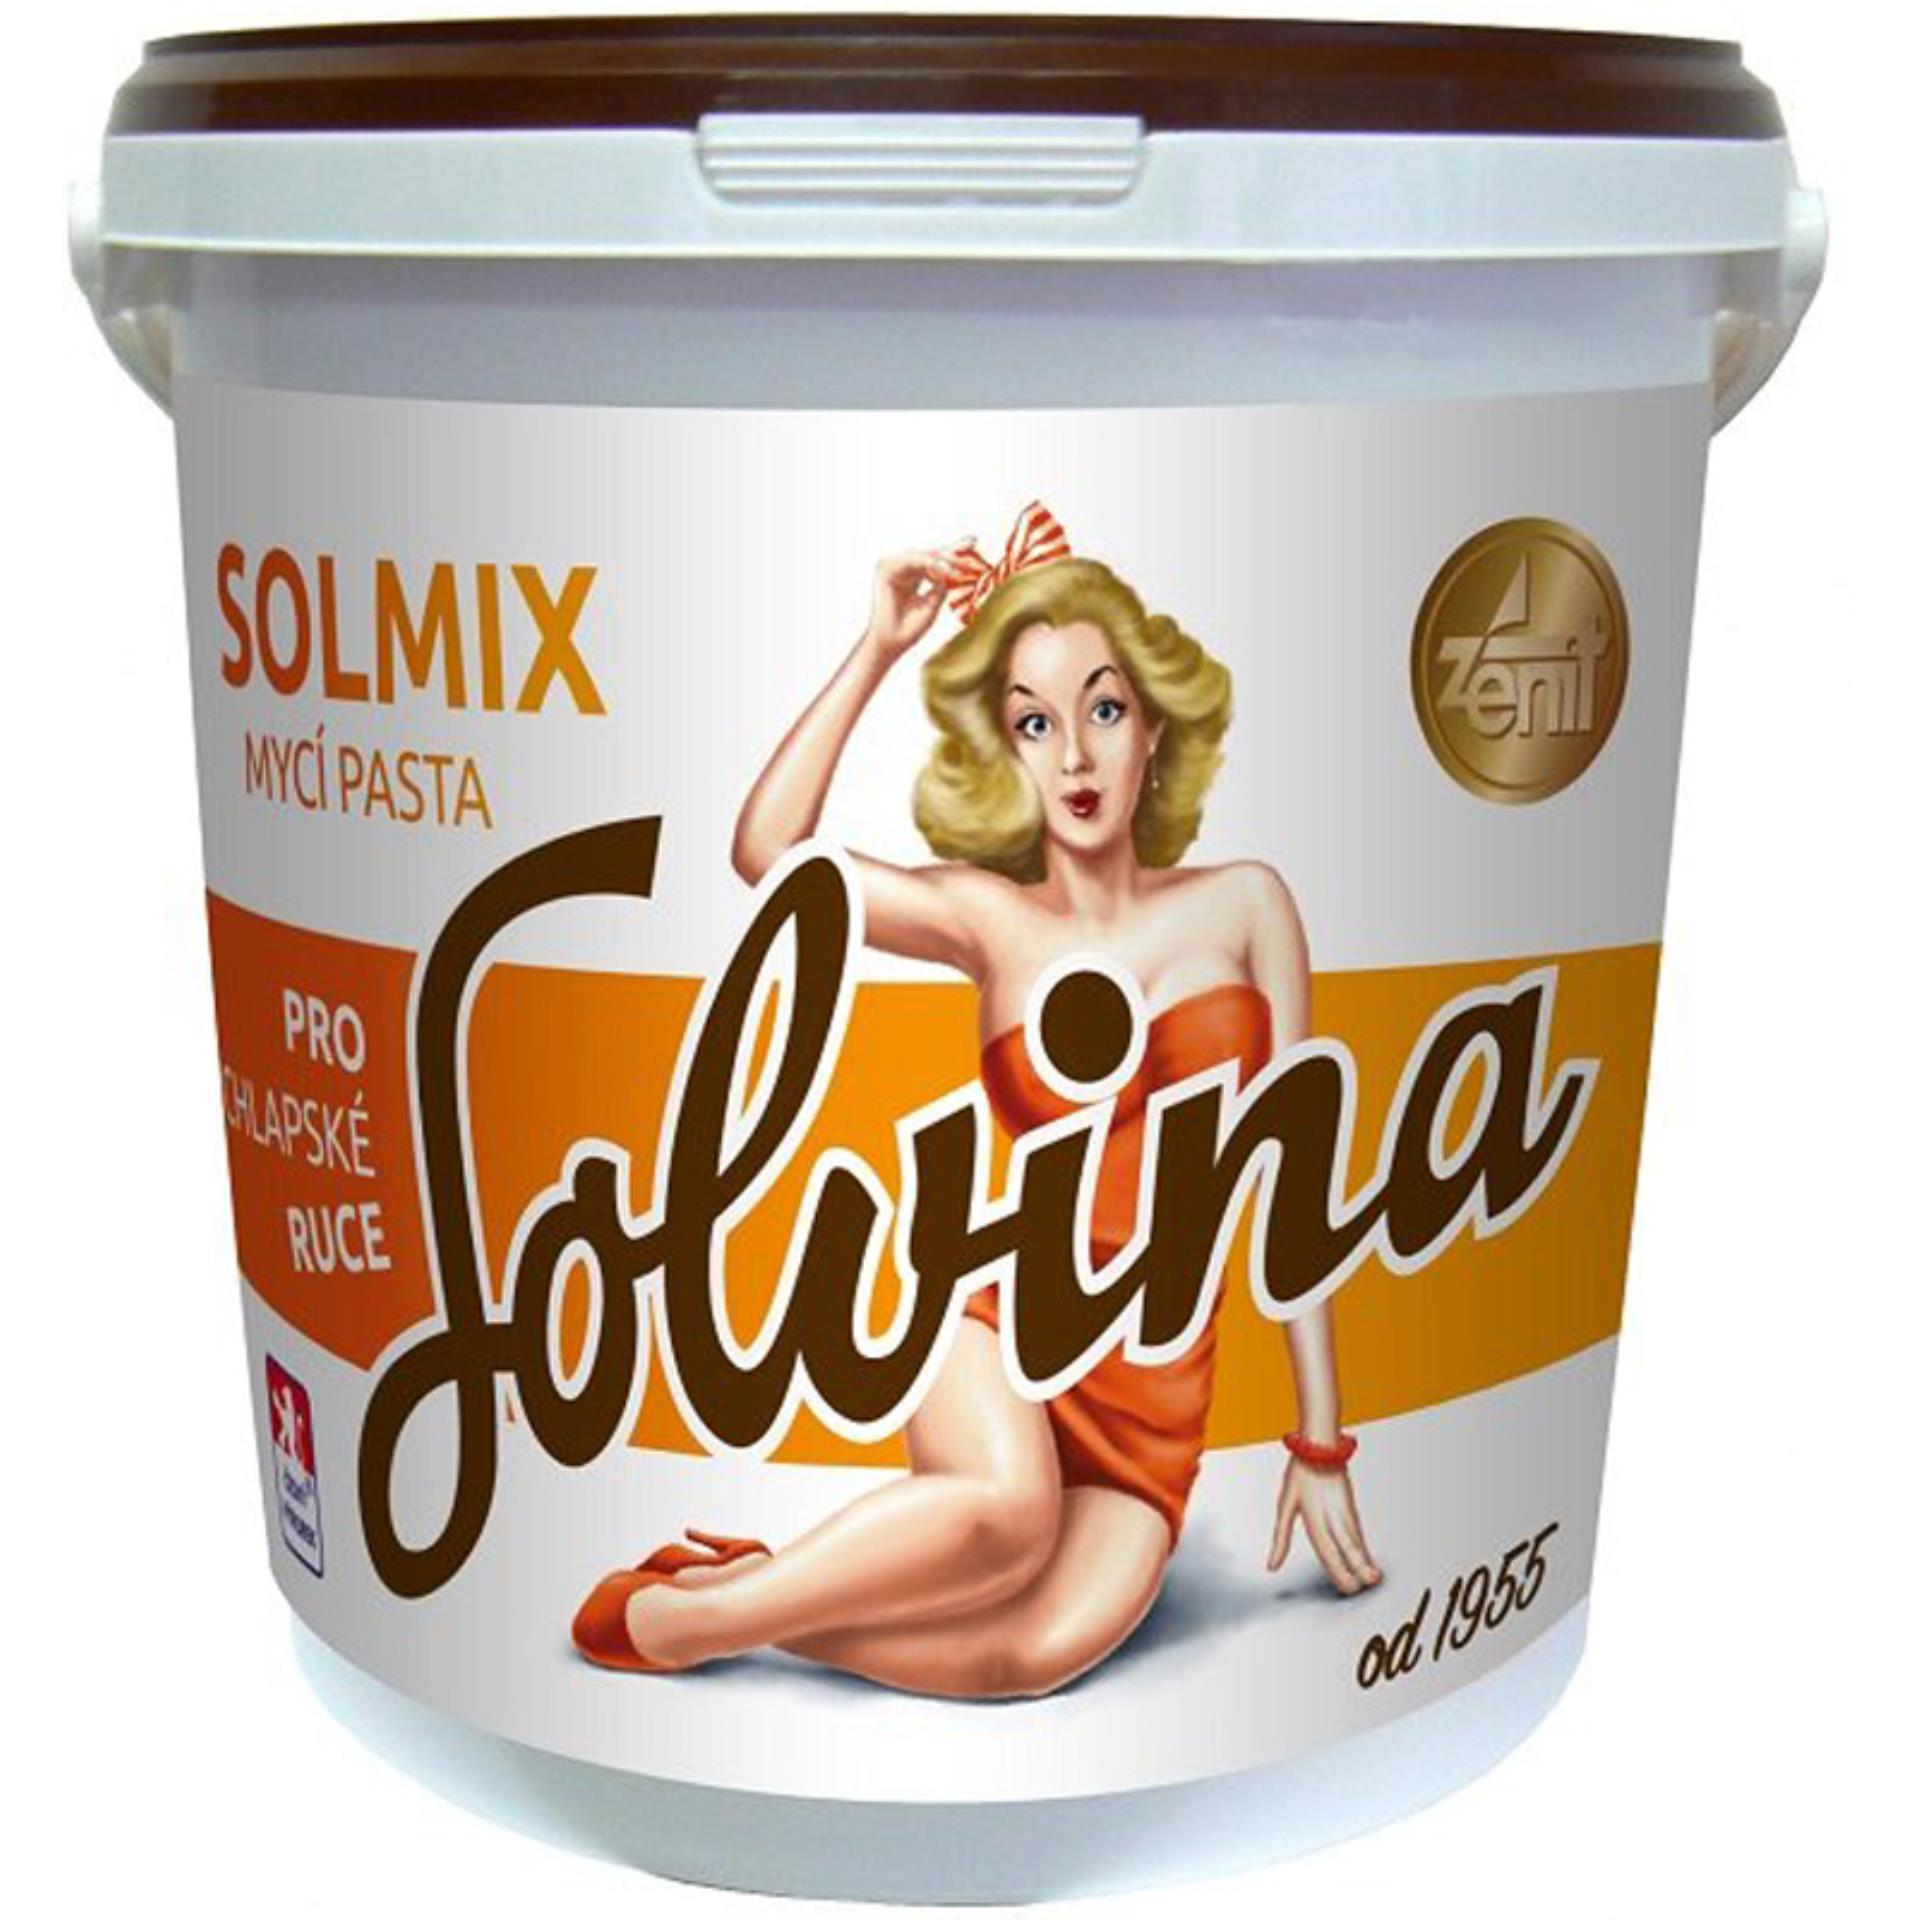 Solvina Mycí pasta - Solmix, 10 kg